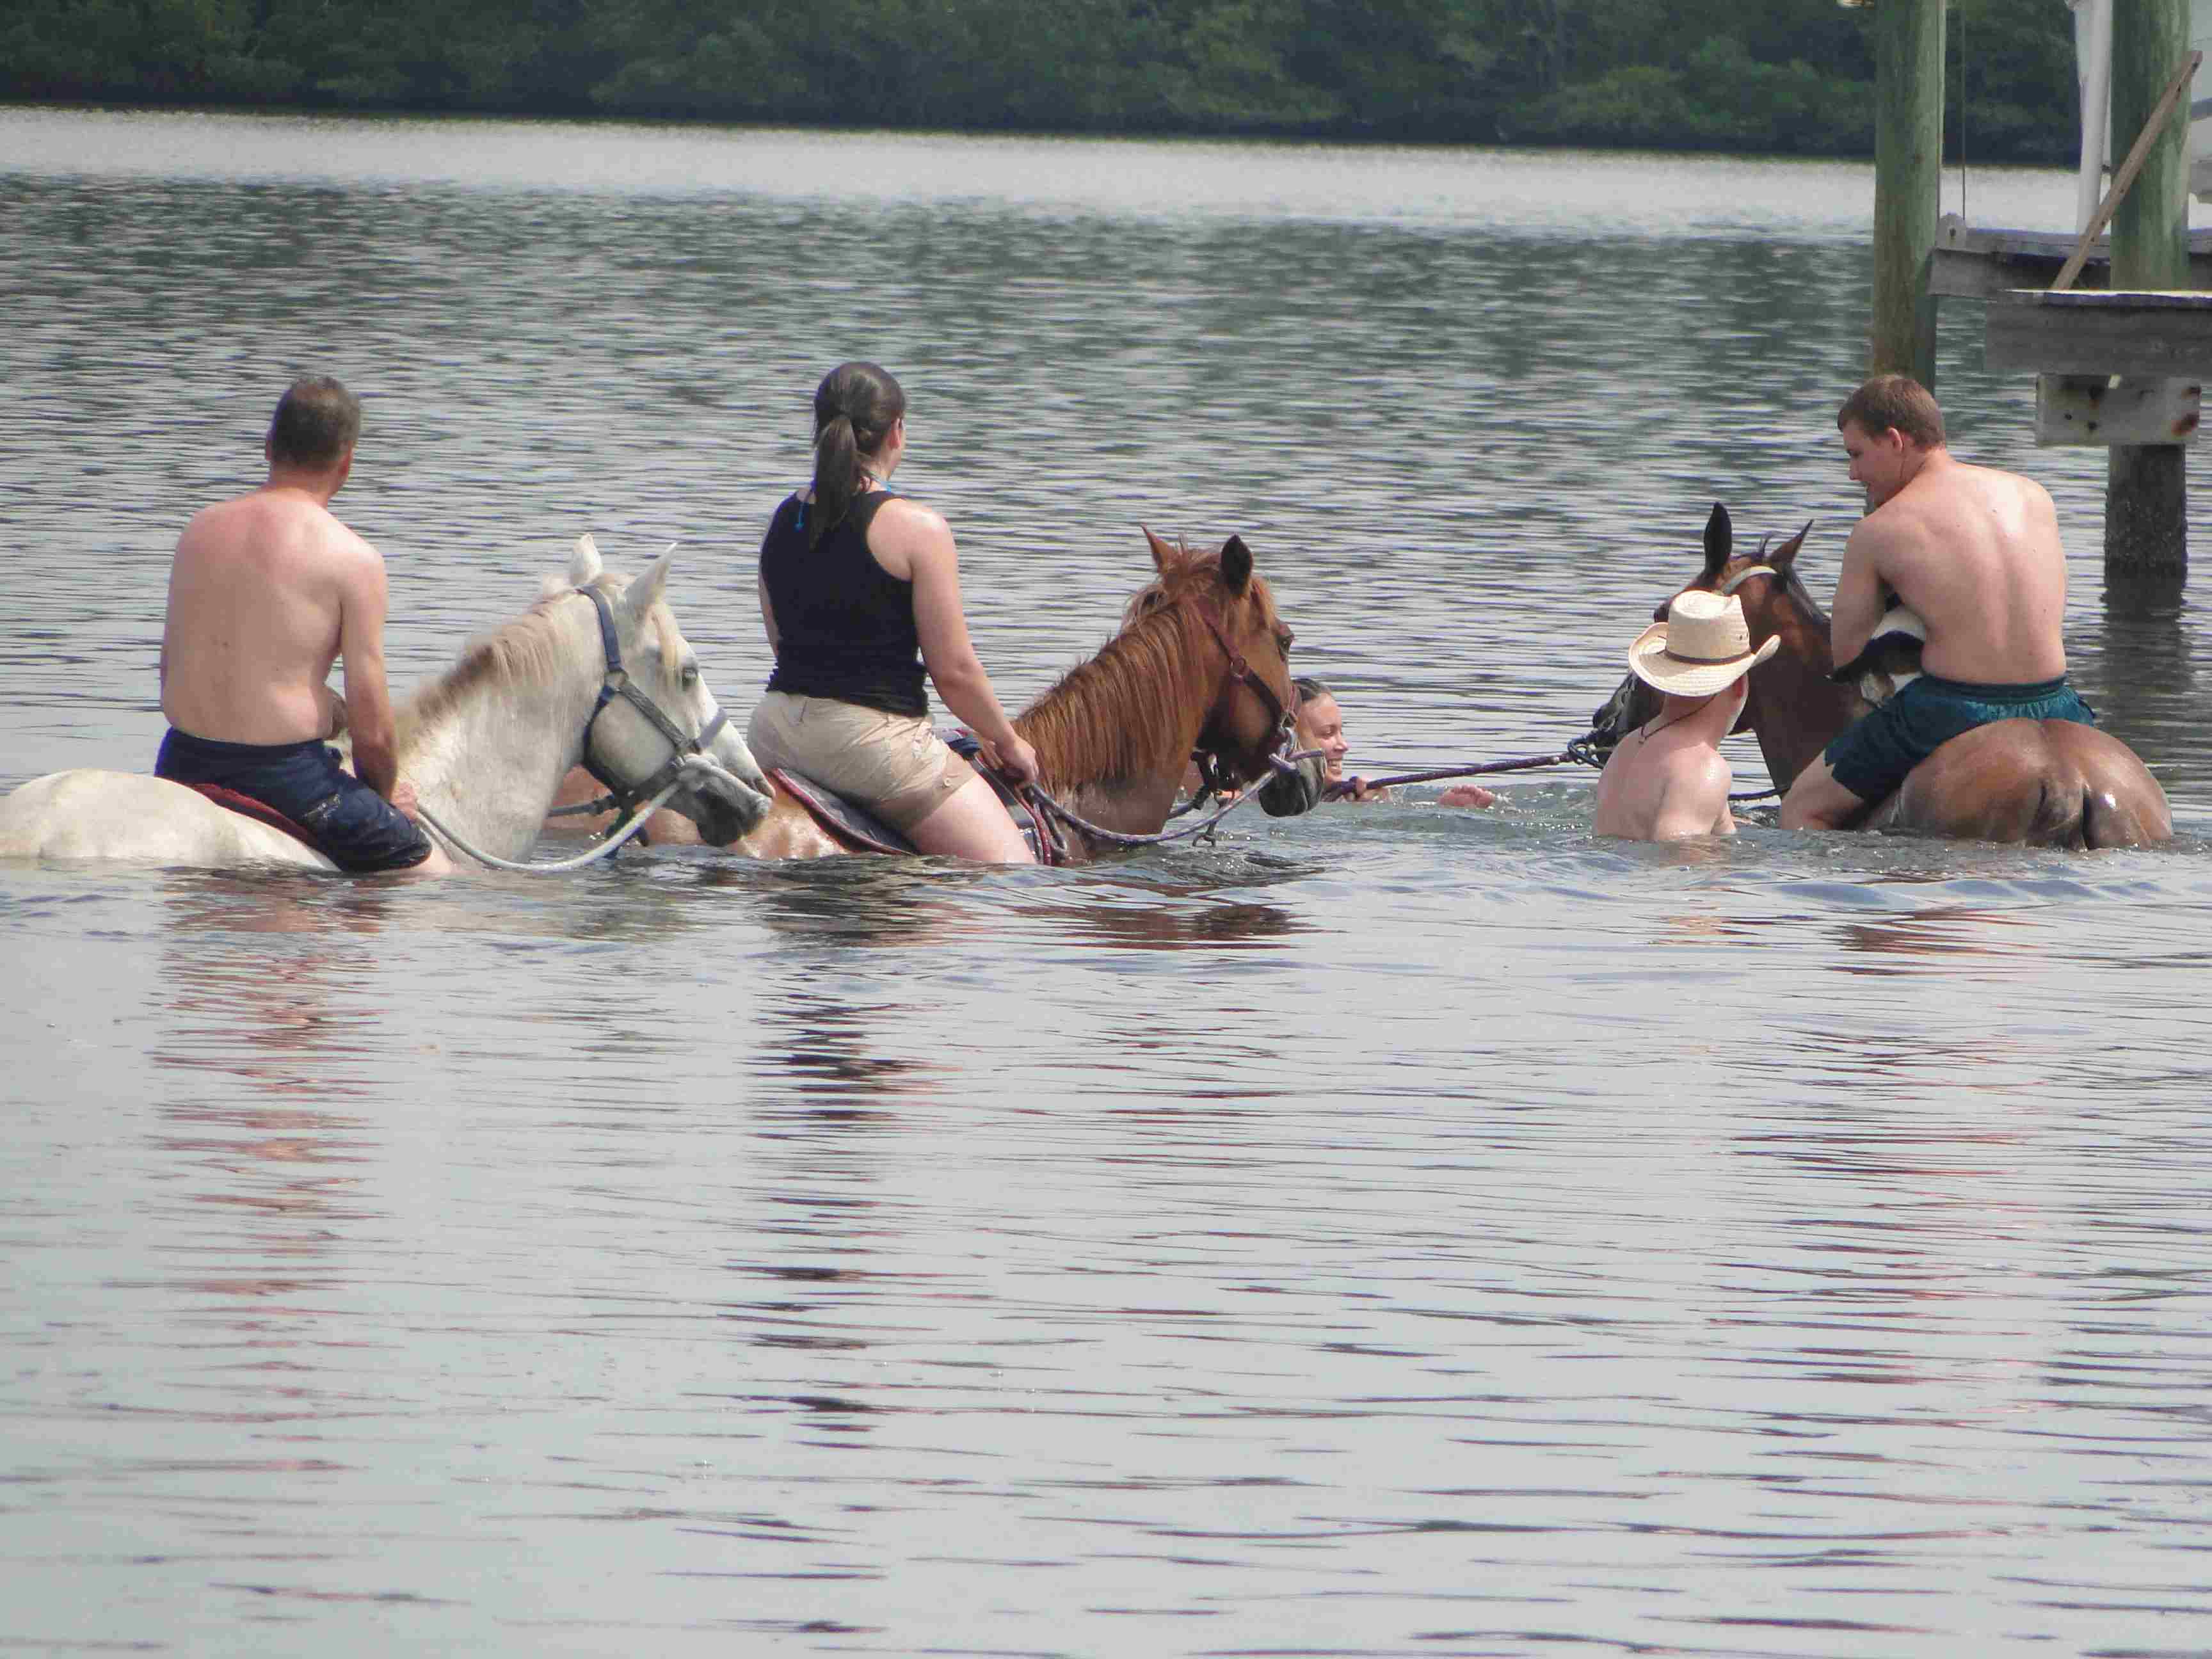 Du går i vandet på hesteryg: de modige forsøger at surfe. Foto: Bradenton Area